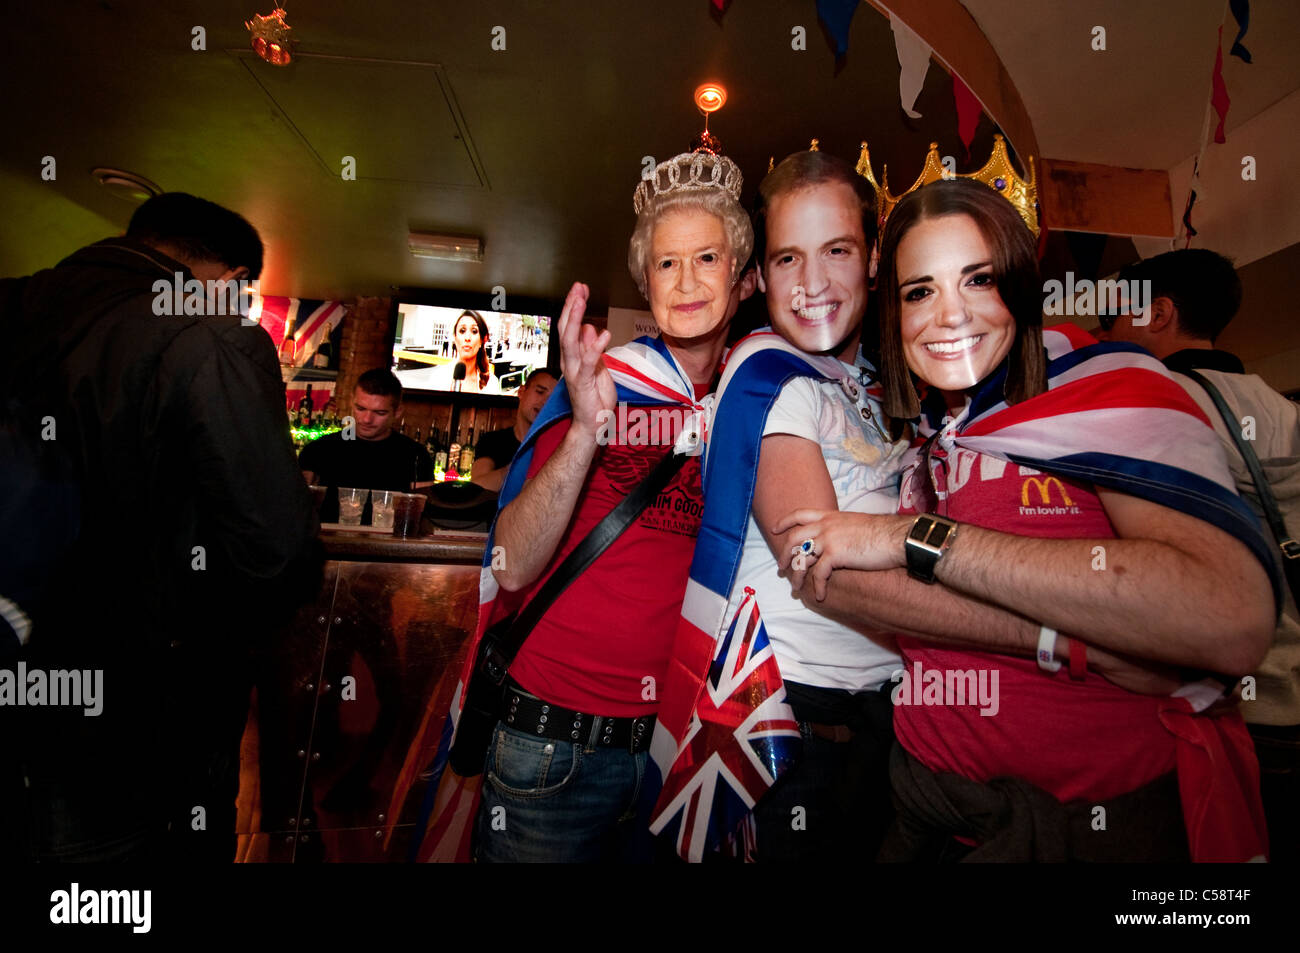 Drinking and celebrating in pub on Royal Wedding day Soho, London Stock Photo